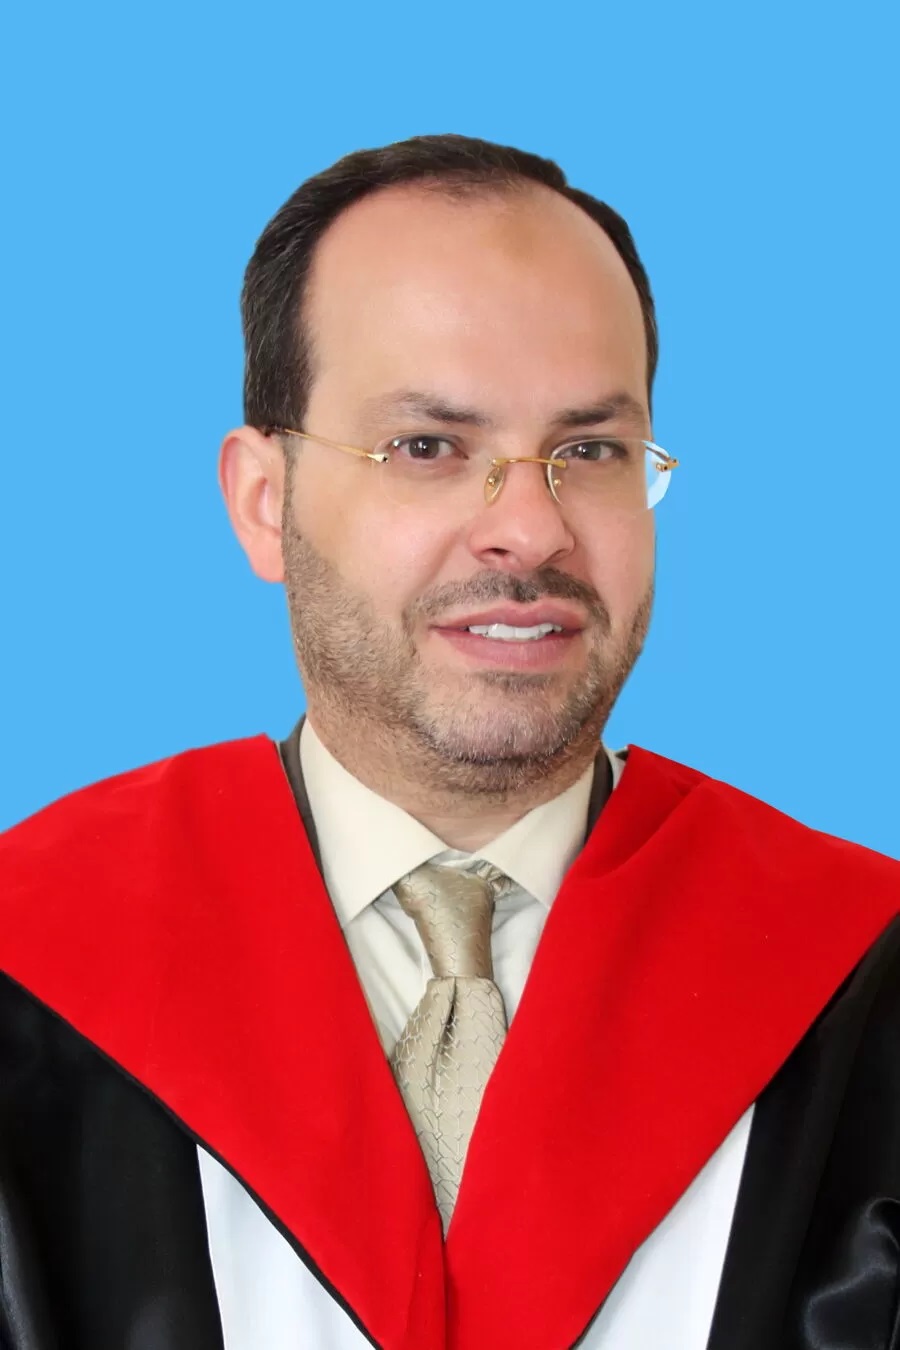 وفاة الدكتور محمد فوزي الحنيطي إثر حادث سير مؤسف قرب معرض عمّان.